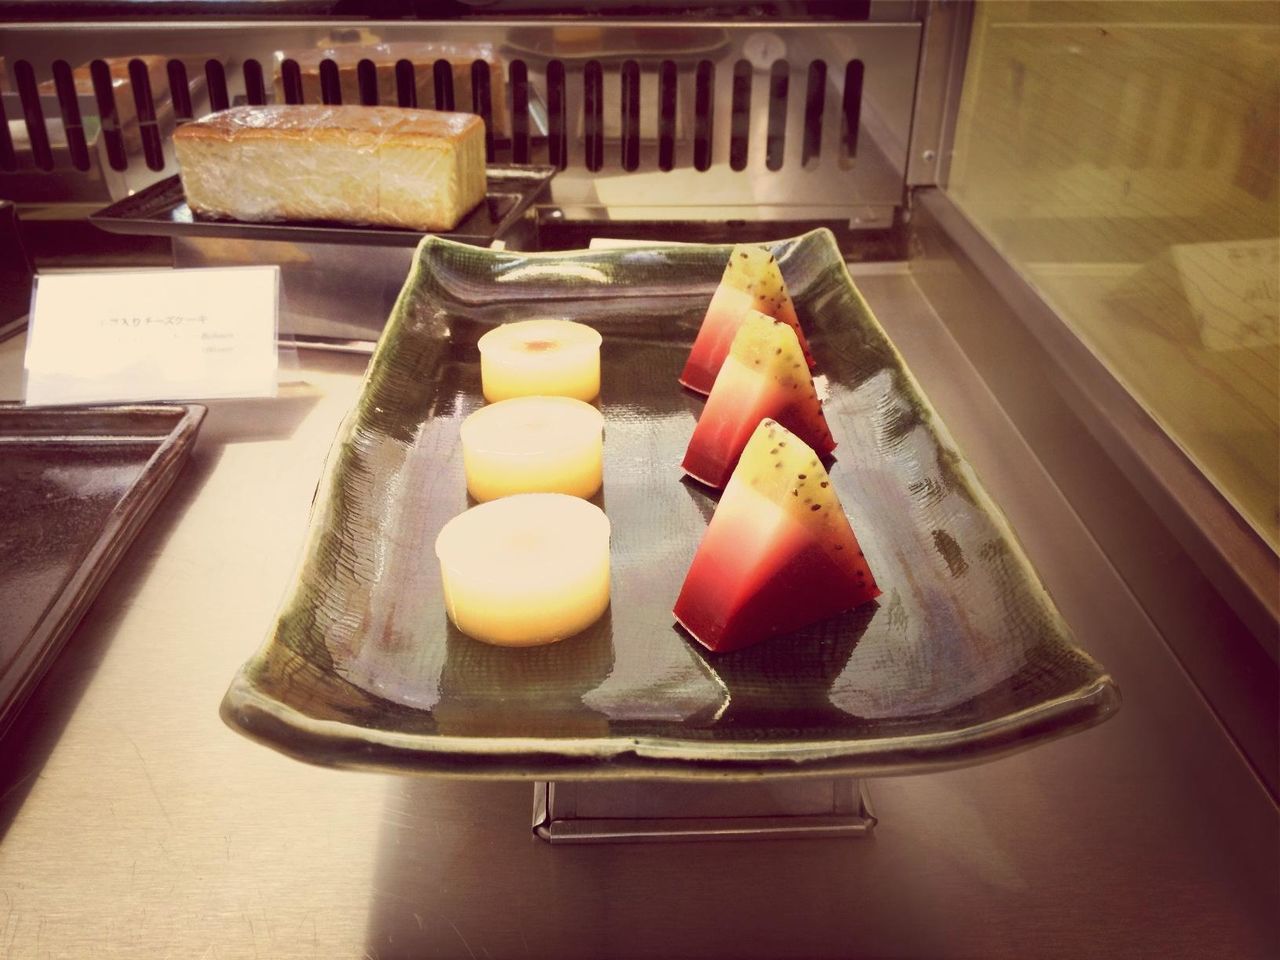 Dessert served in tray